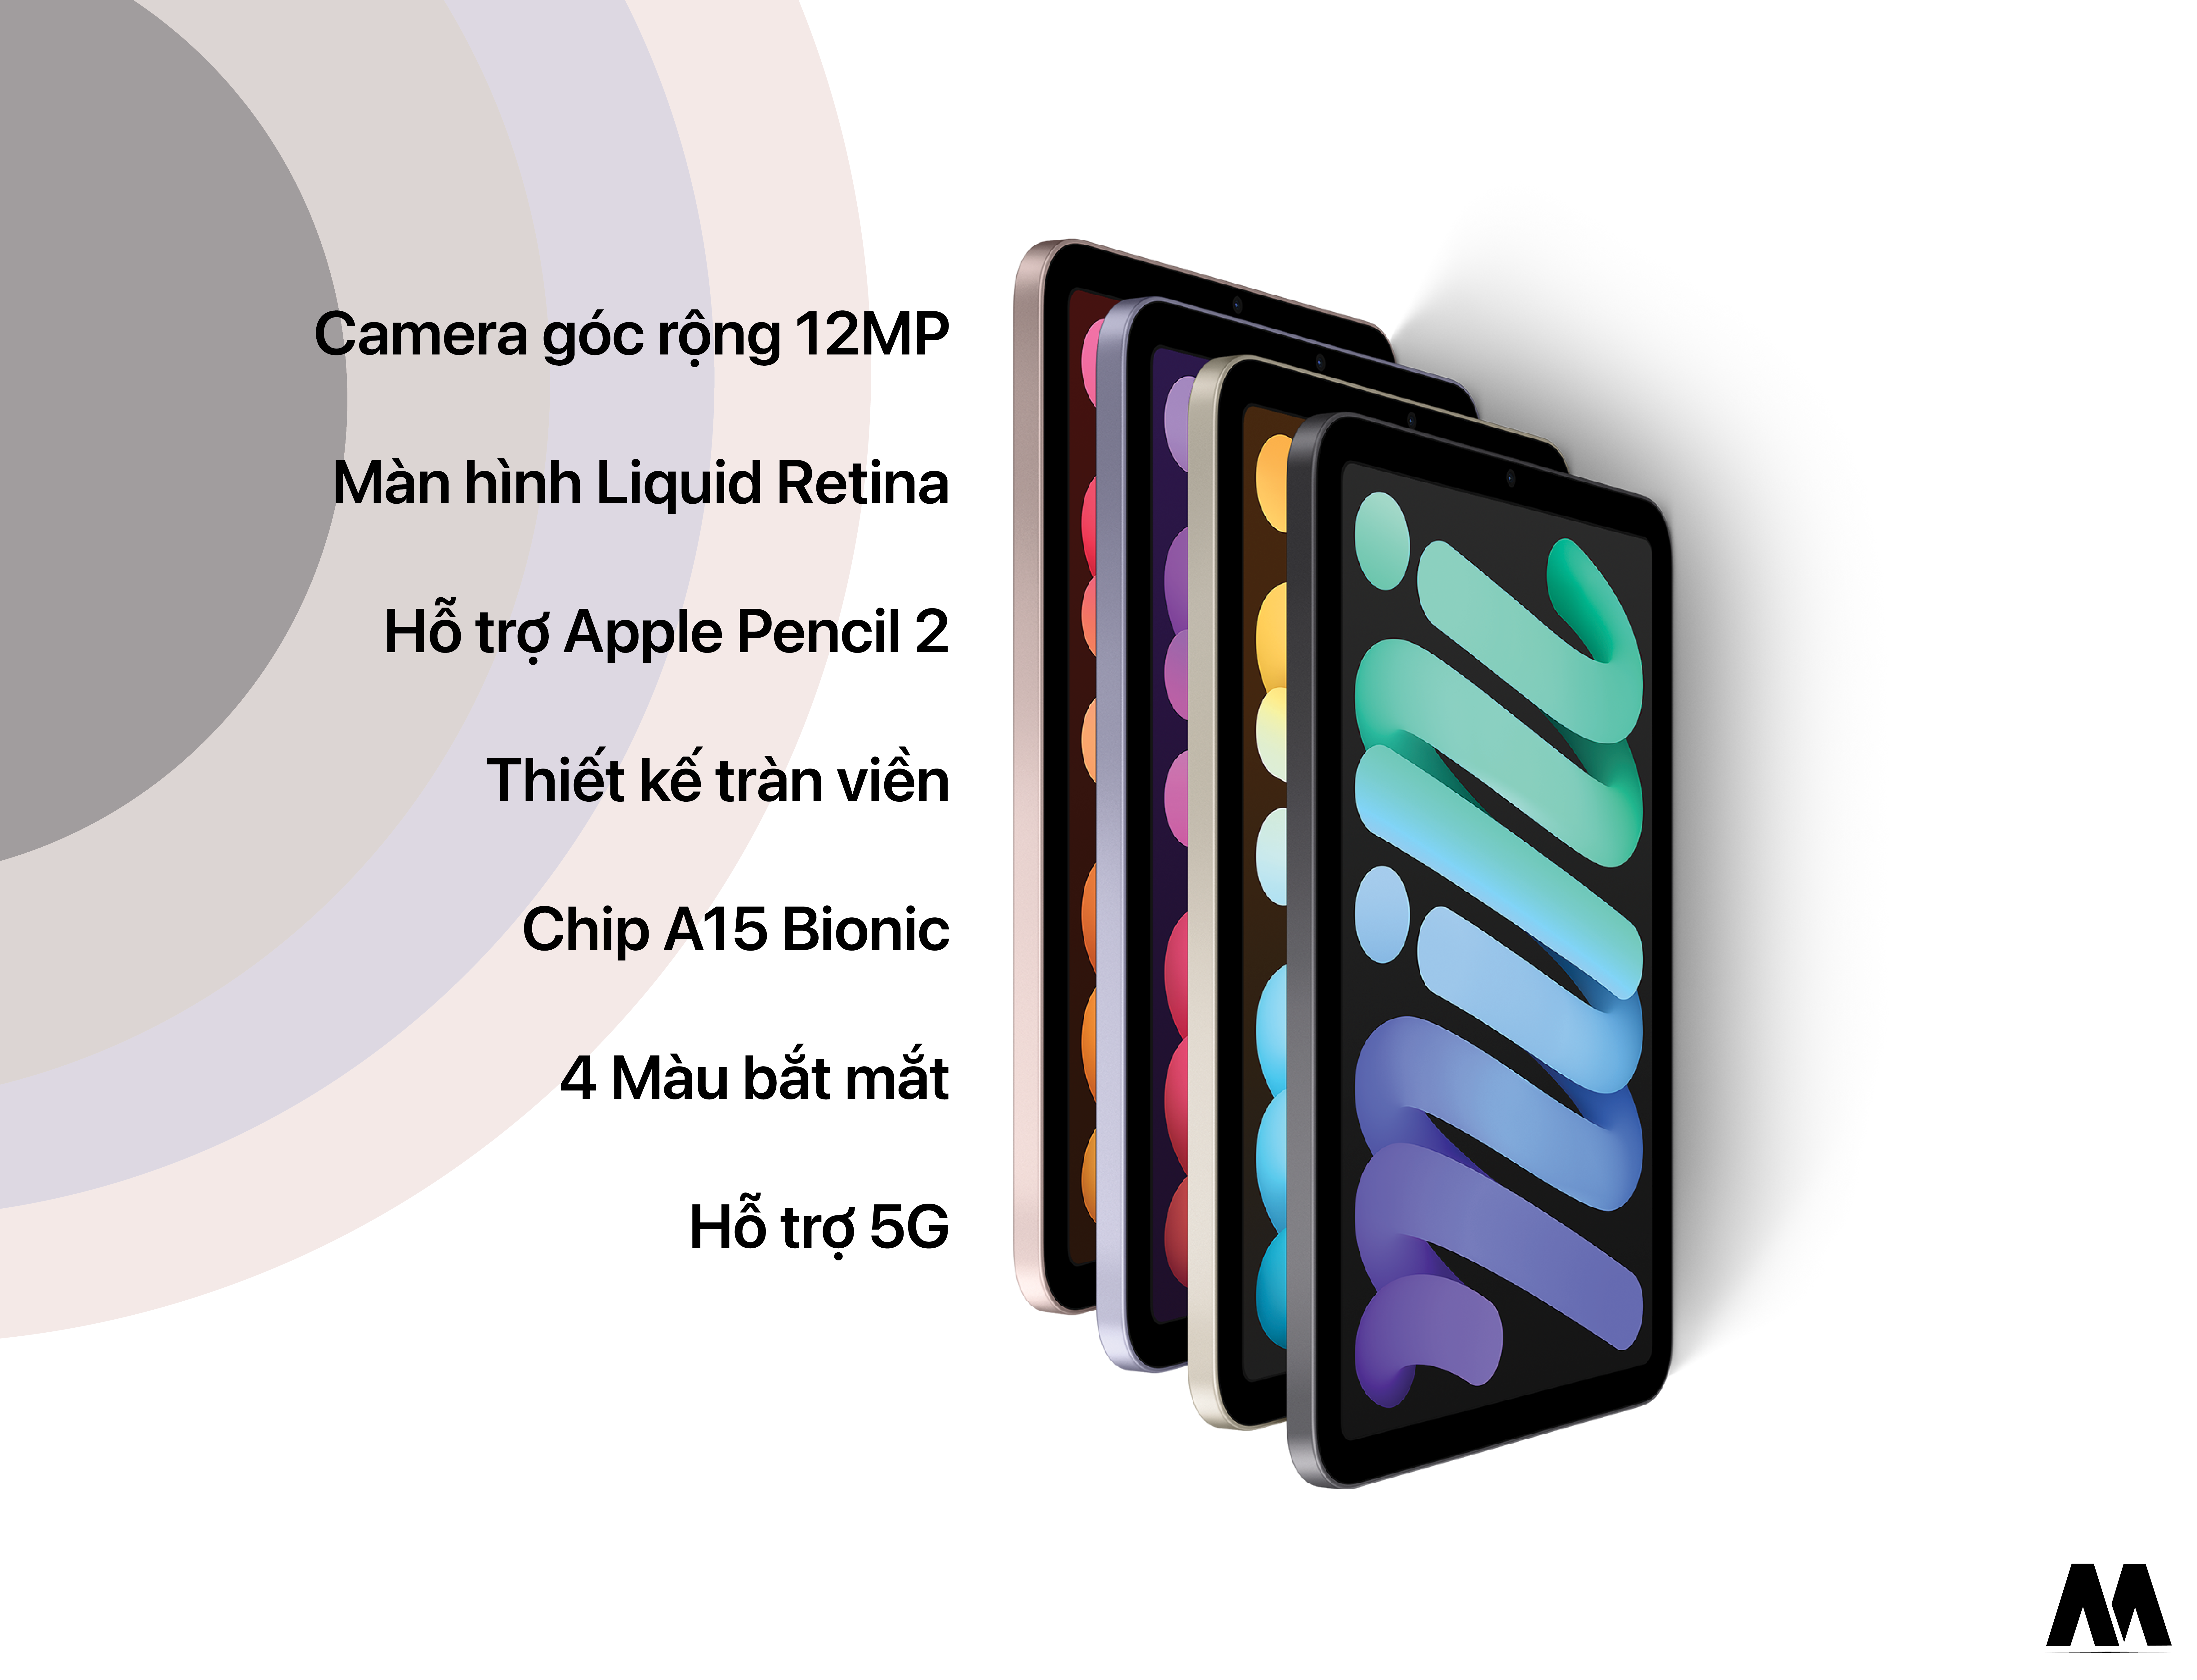 iPad Mini 6 có tổng cộng 4 lựa chọn màu sắc